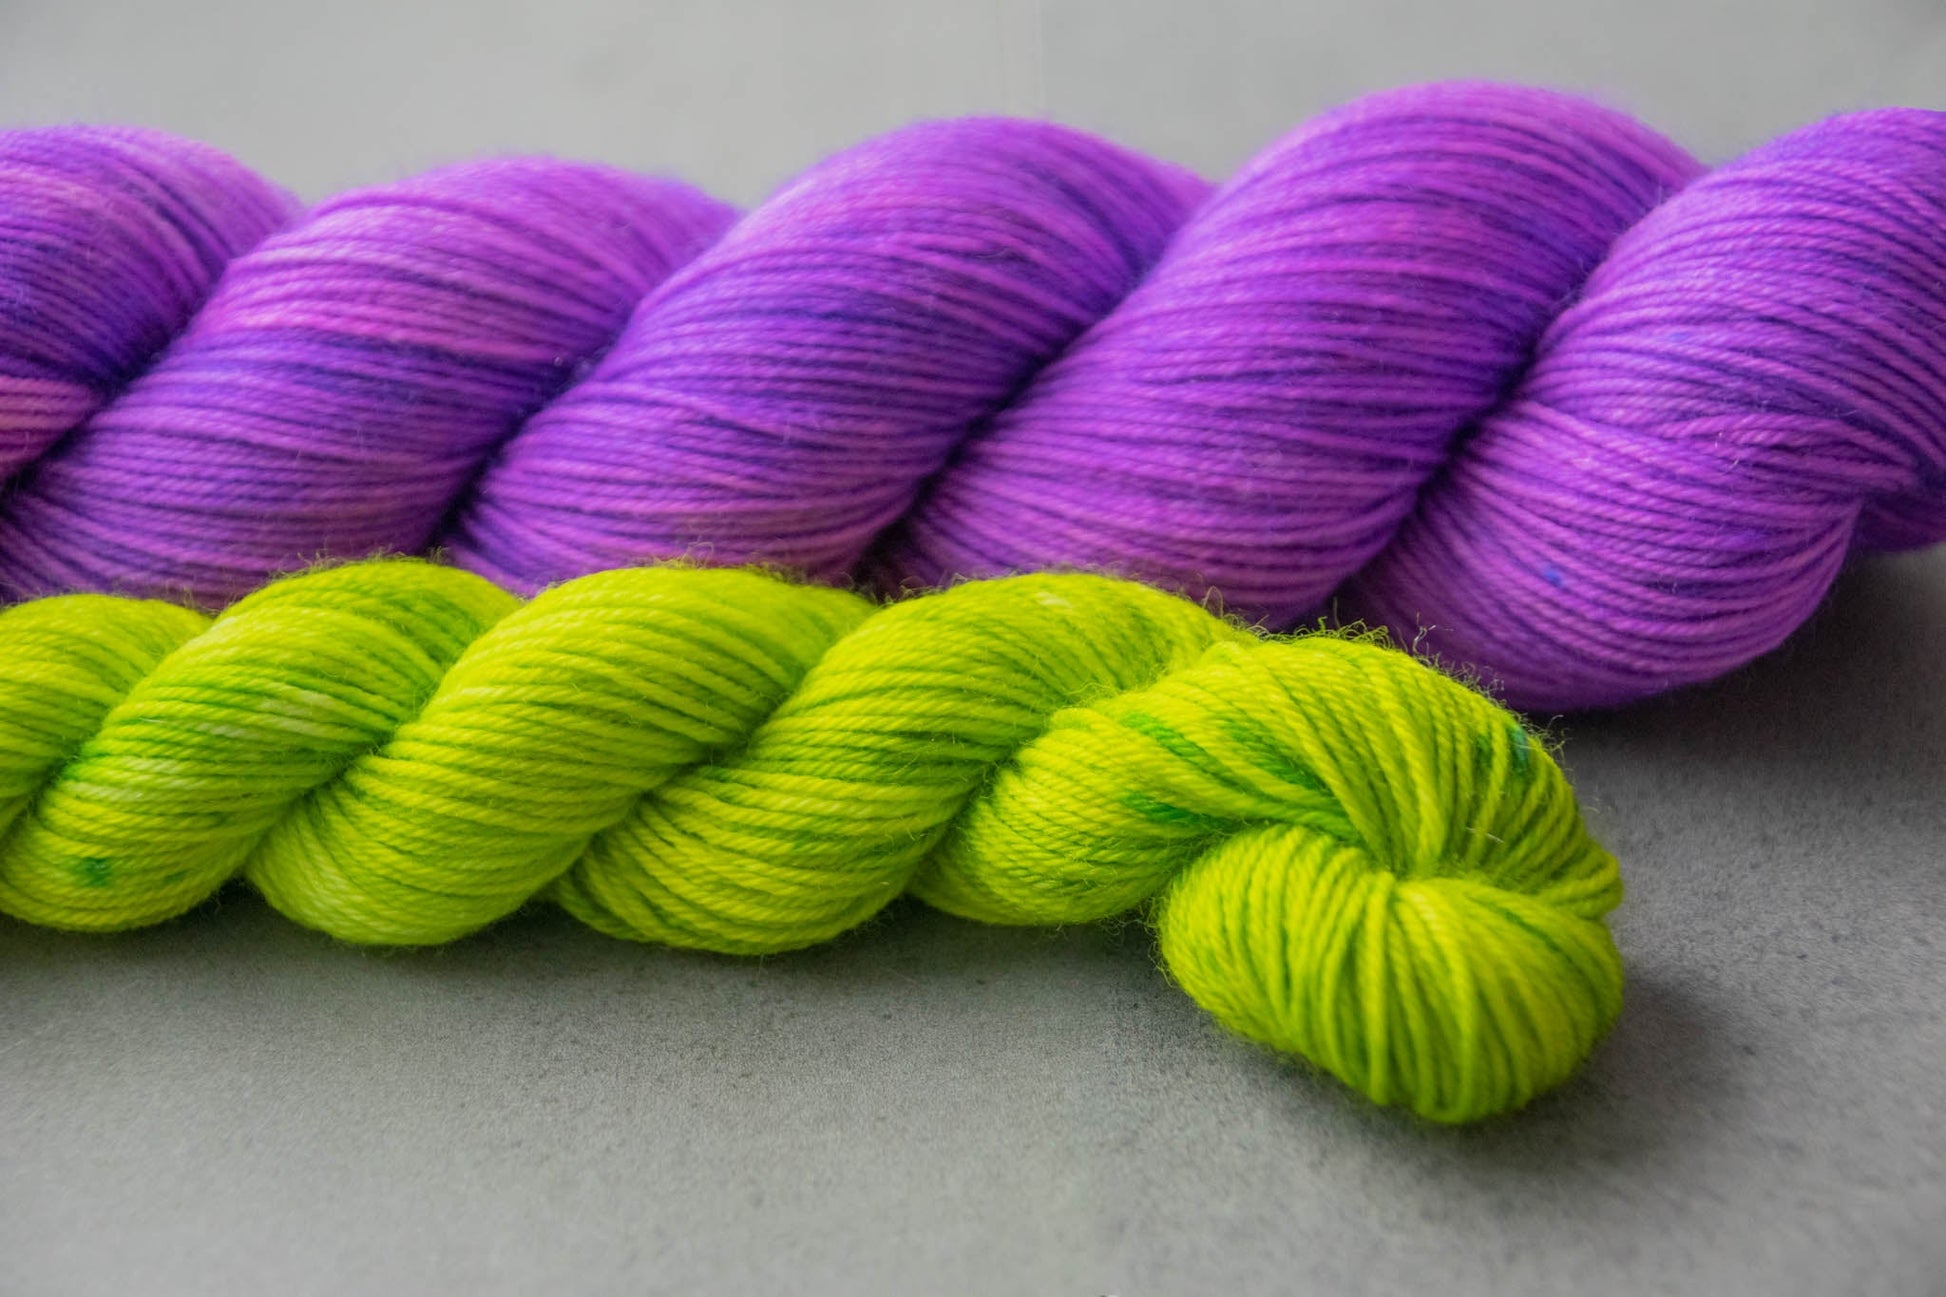 A skein of purple Merino wool yarn next to an electric green mini.